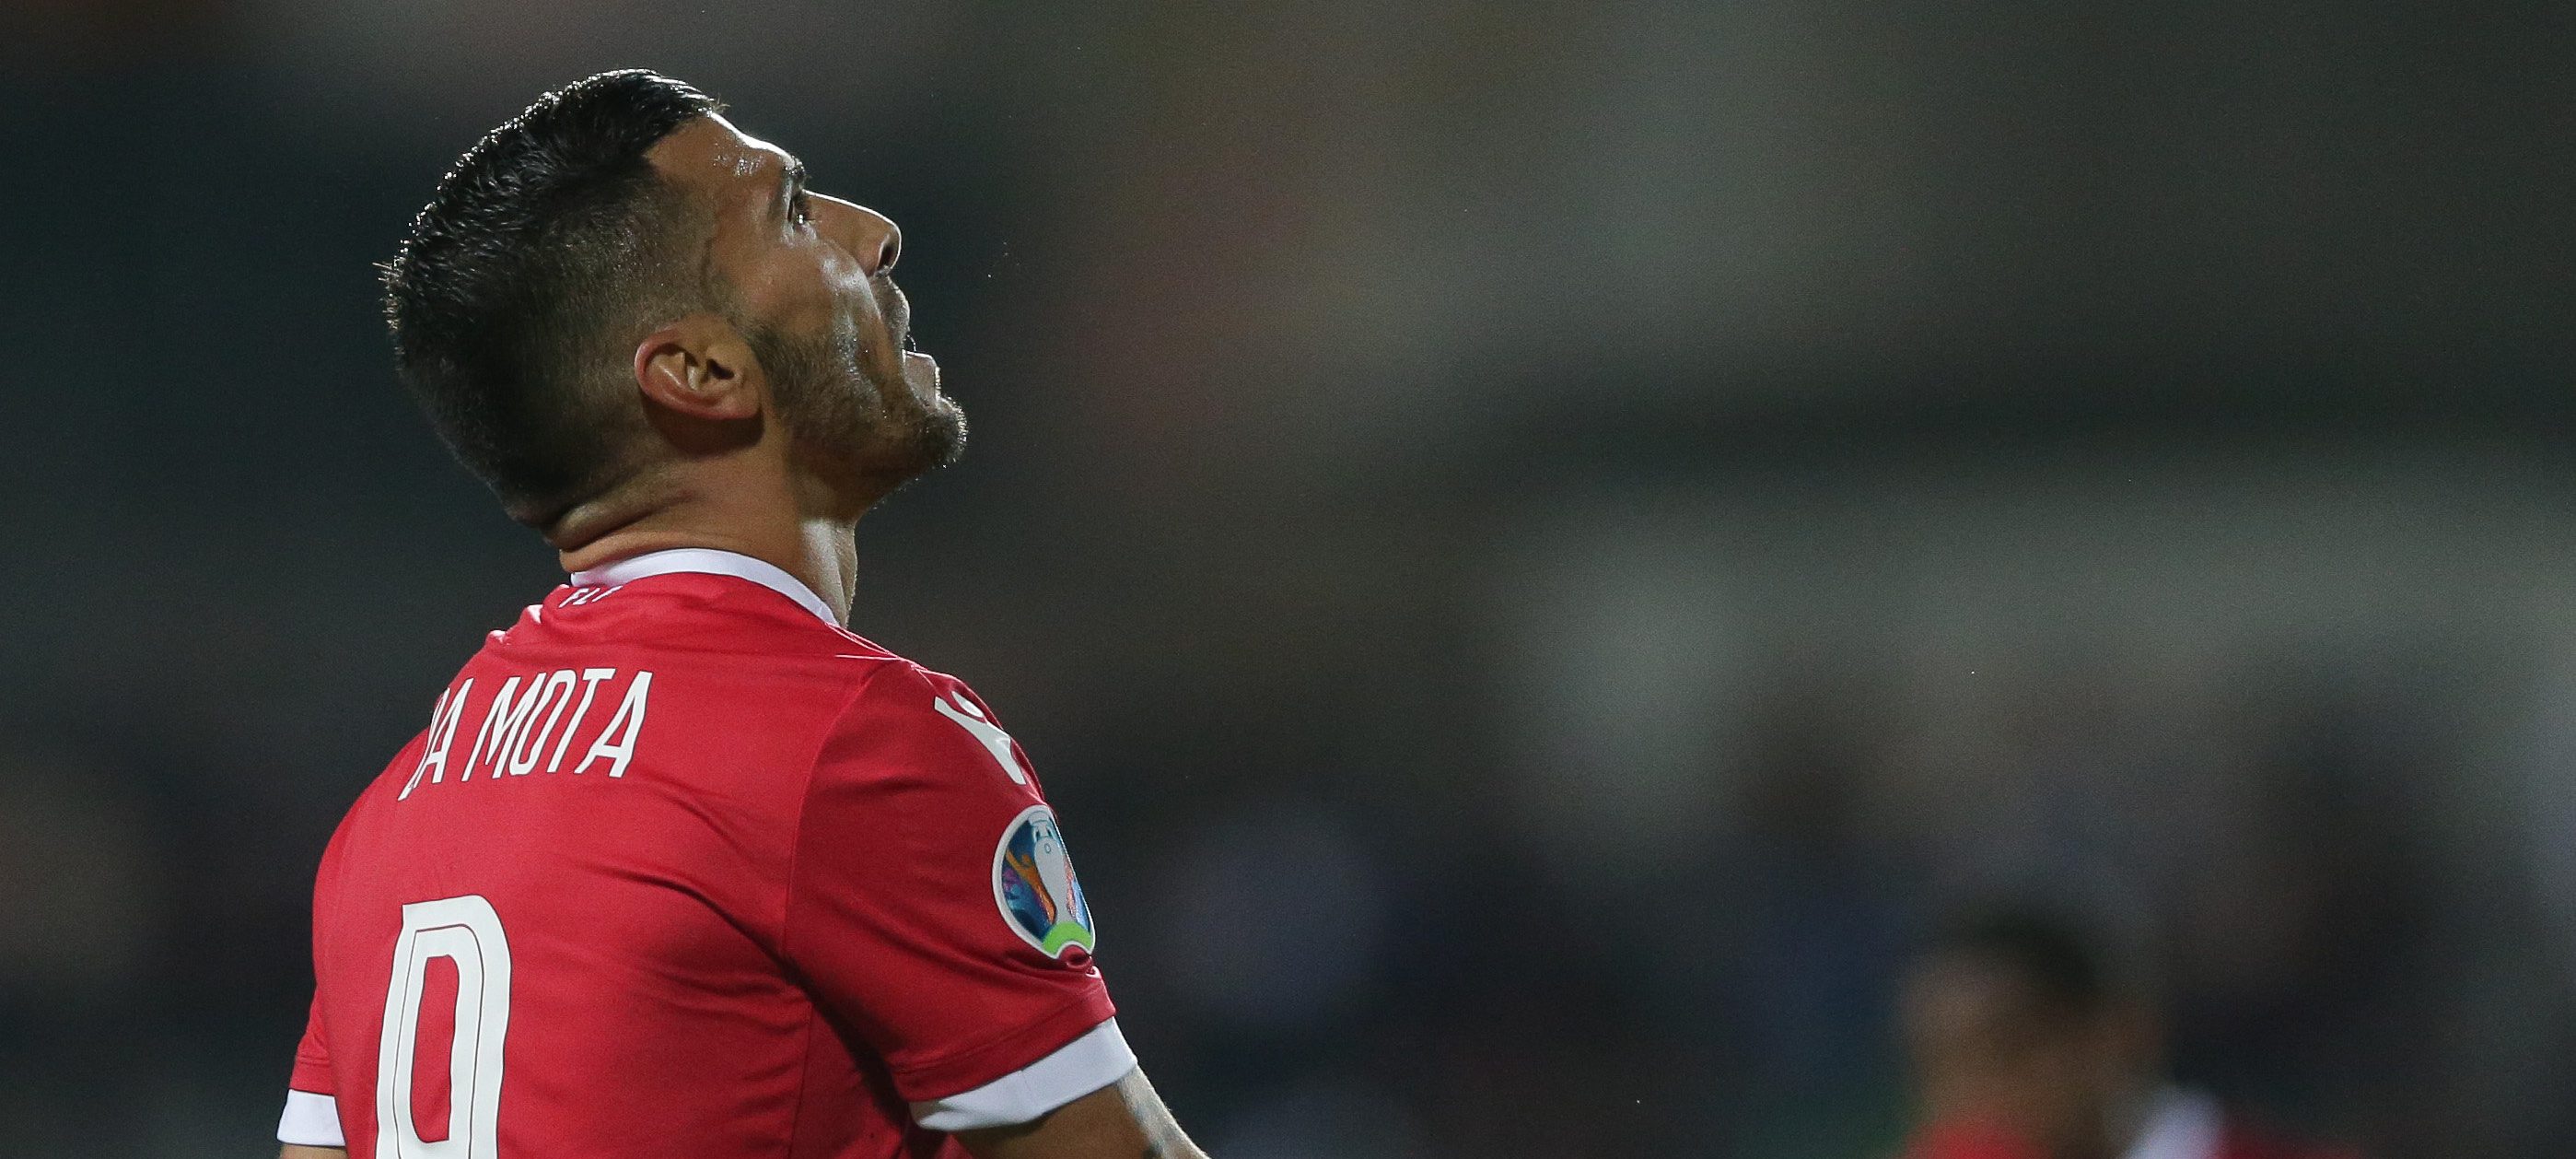 Kaum vertreten: Portugiesen sind rar im luxemburgischen Spitzenfußball